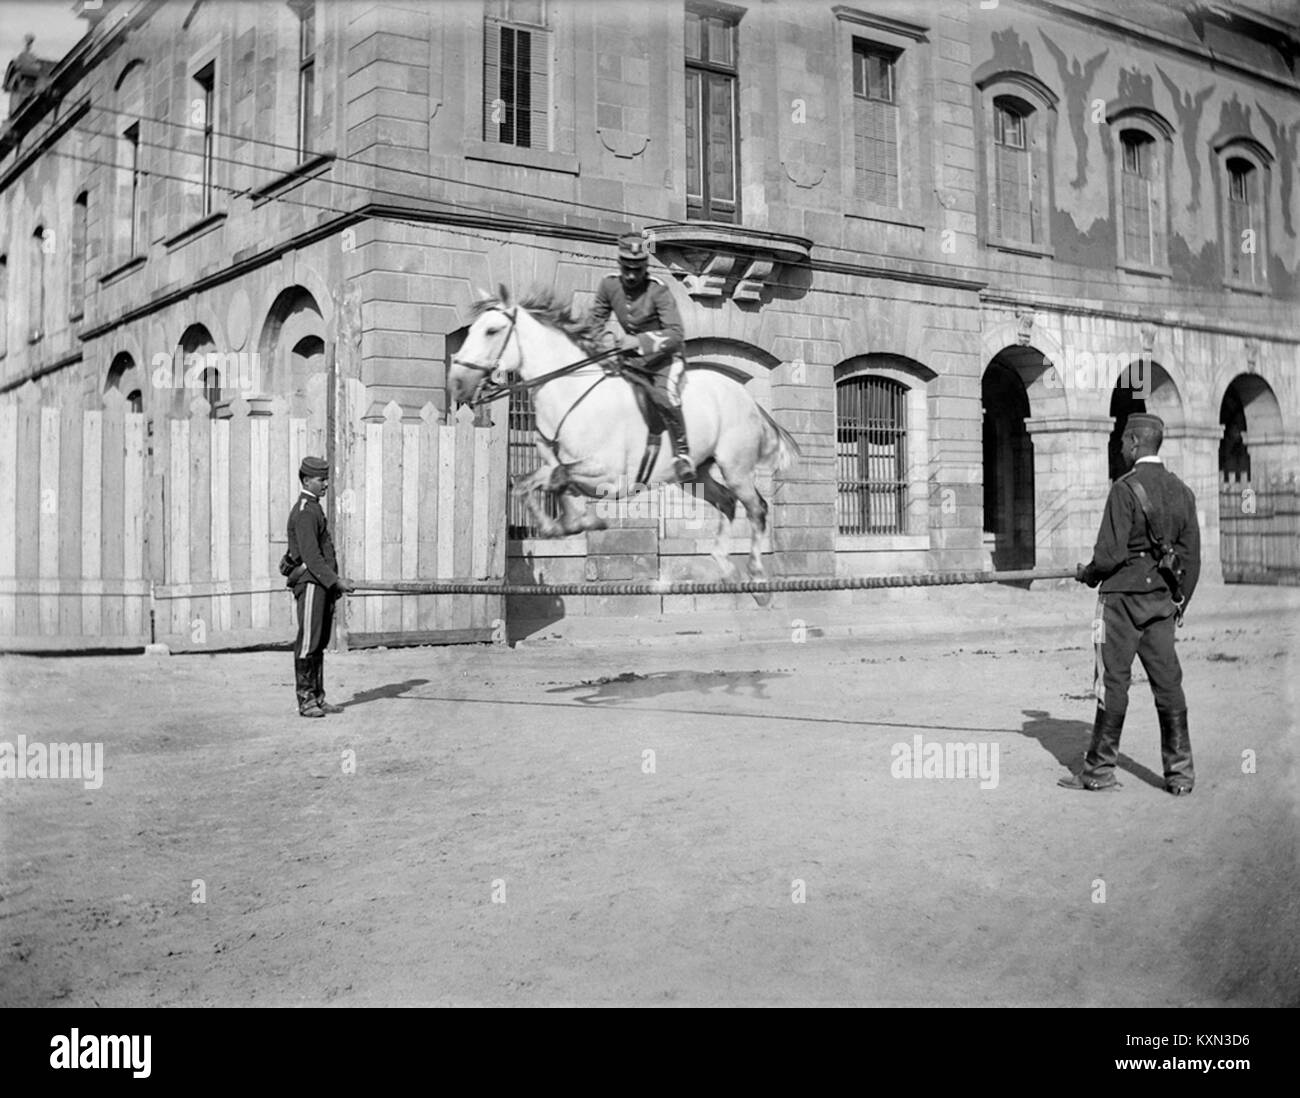 Baldomer Gili Roig. Concurs Hípic Internacional de Barcelona (Pati d’Armes de la Ciutadella), 1905 - 1910 Stock Photo